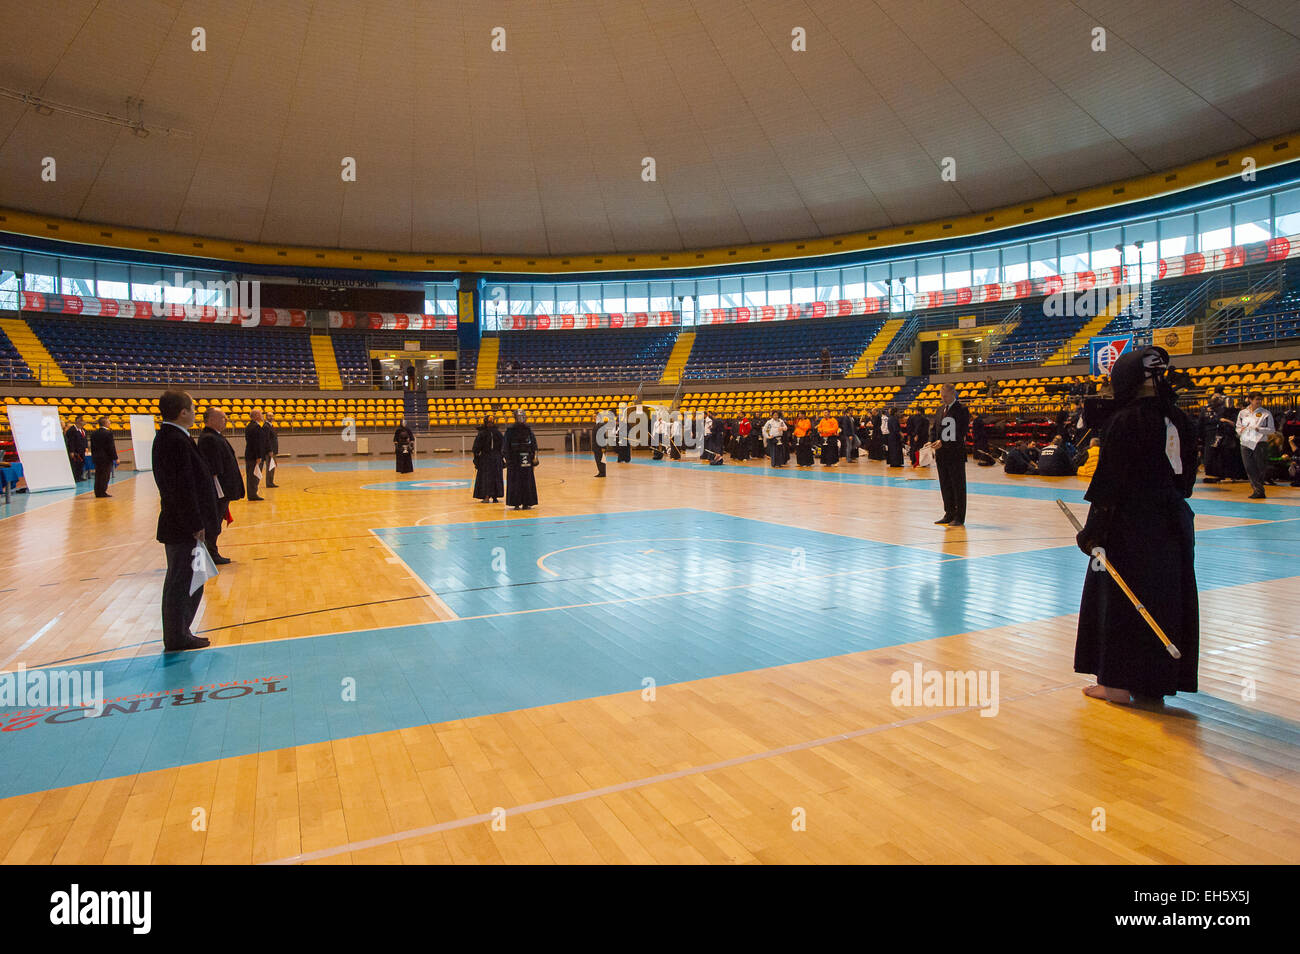 Le piémont, Turin, Italie. 7 mars, 2015. Championnats italien Kendo Cik - concours individuels démarrer Crédit : Realy Easy Star/Alamy Live News Banque D'Images